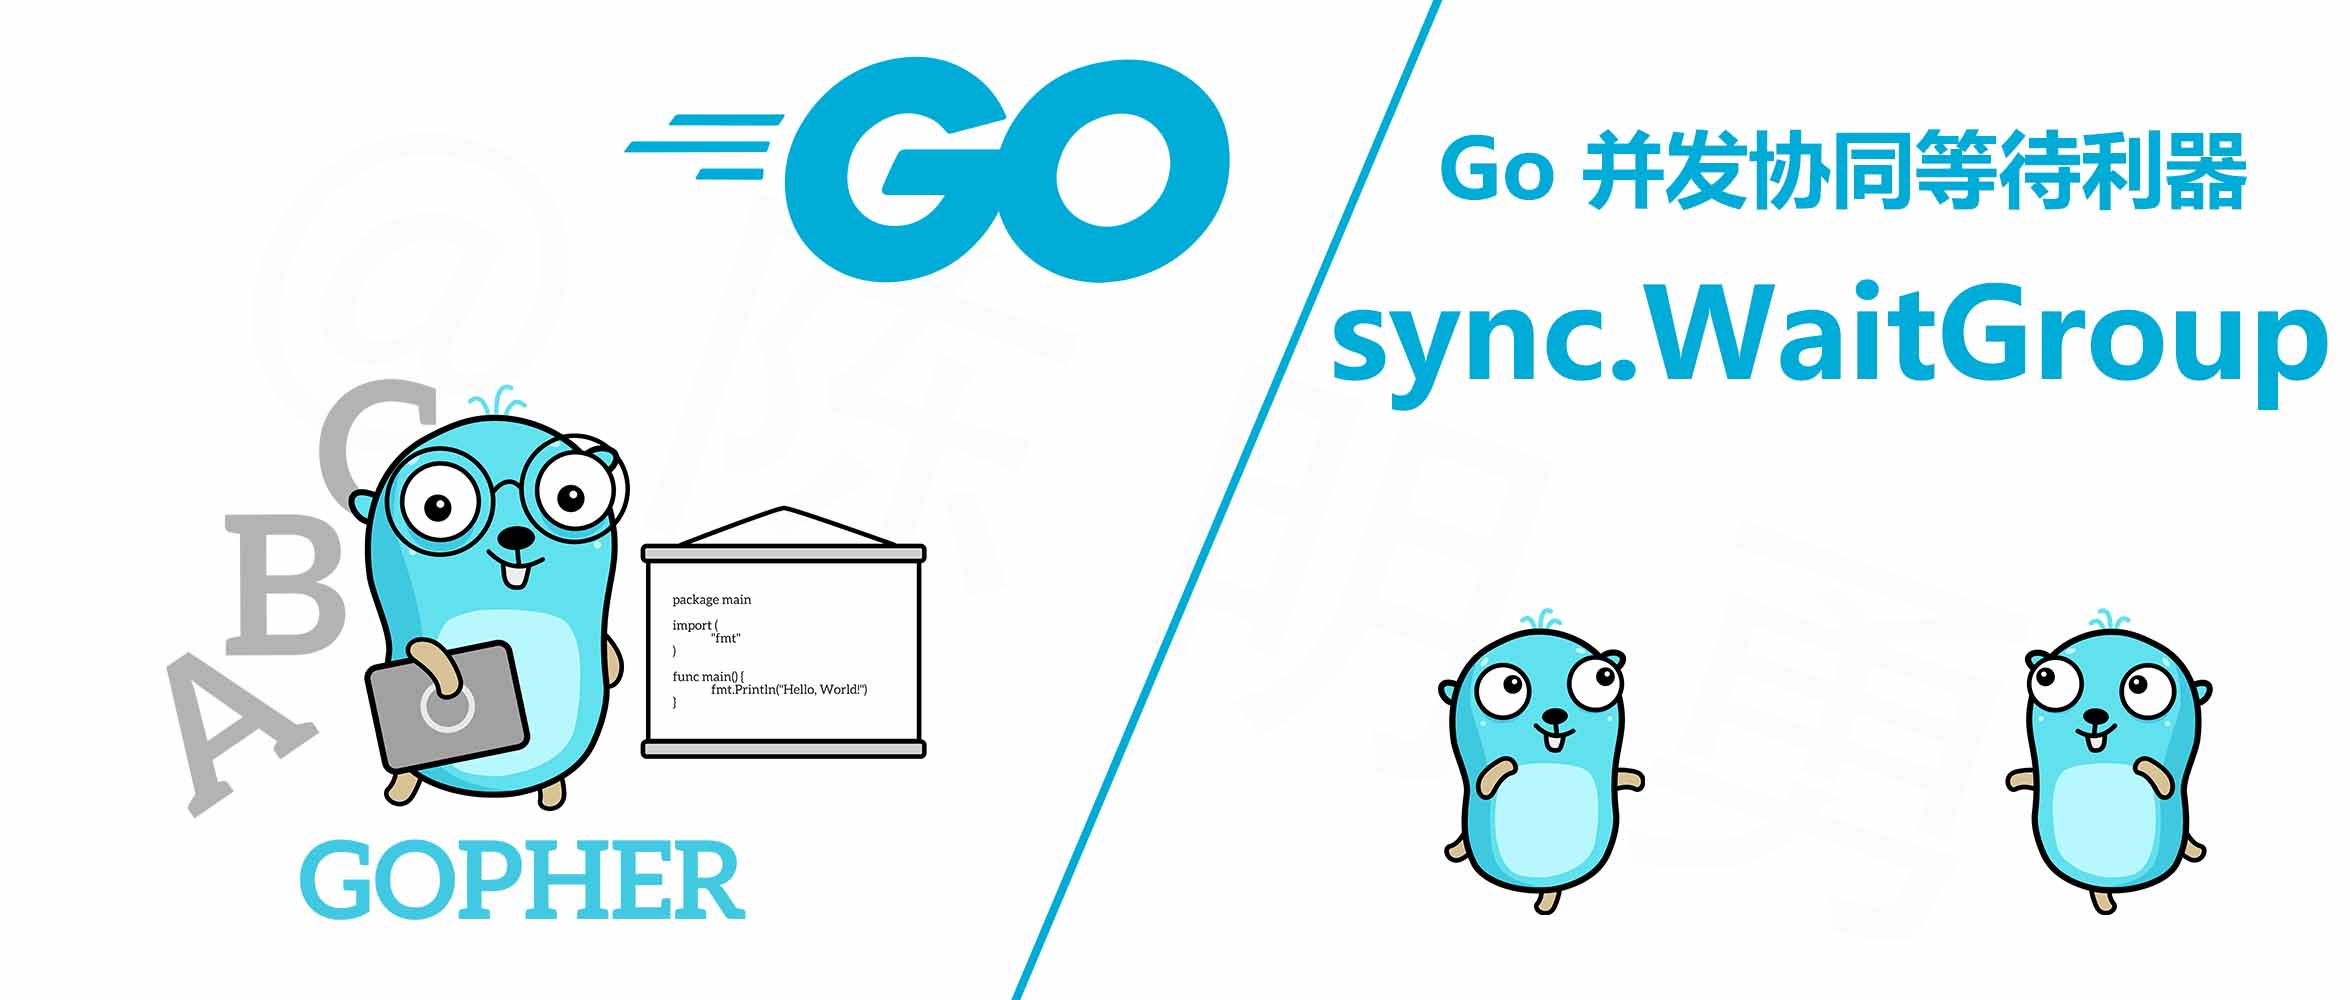 Go 并发编程 | sync.WaitGroup 的使用和注意事项